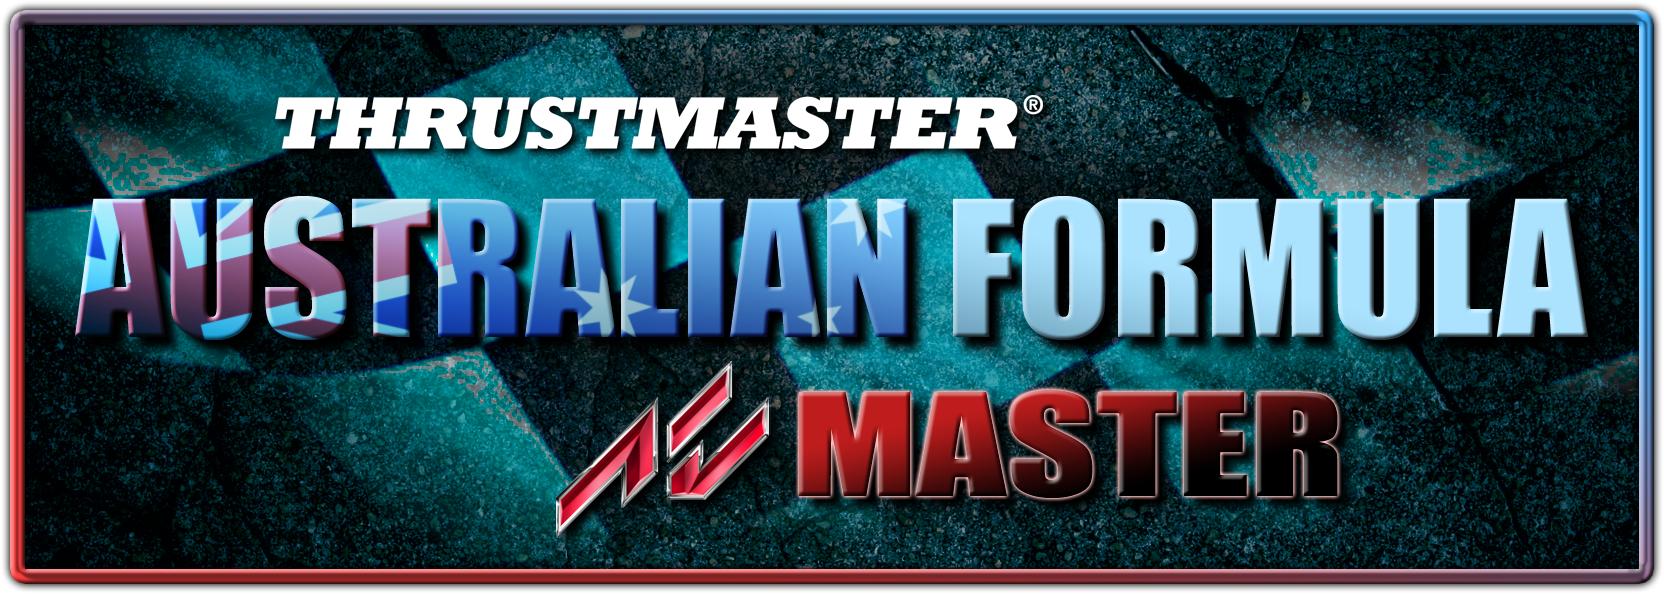 RD Thrustmaster AFM smaller logo.jpg